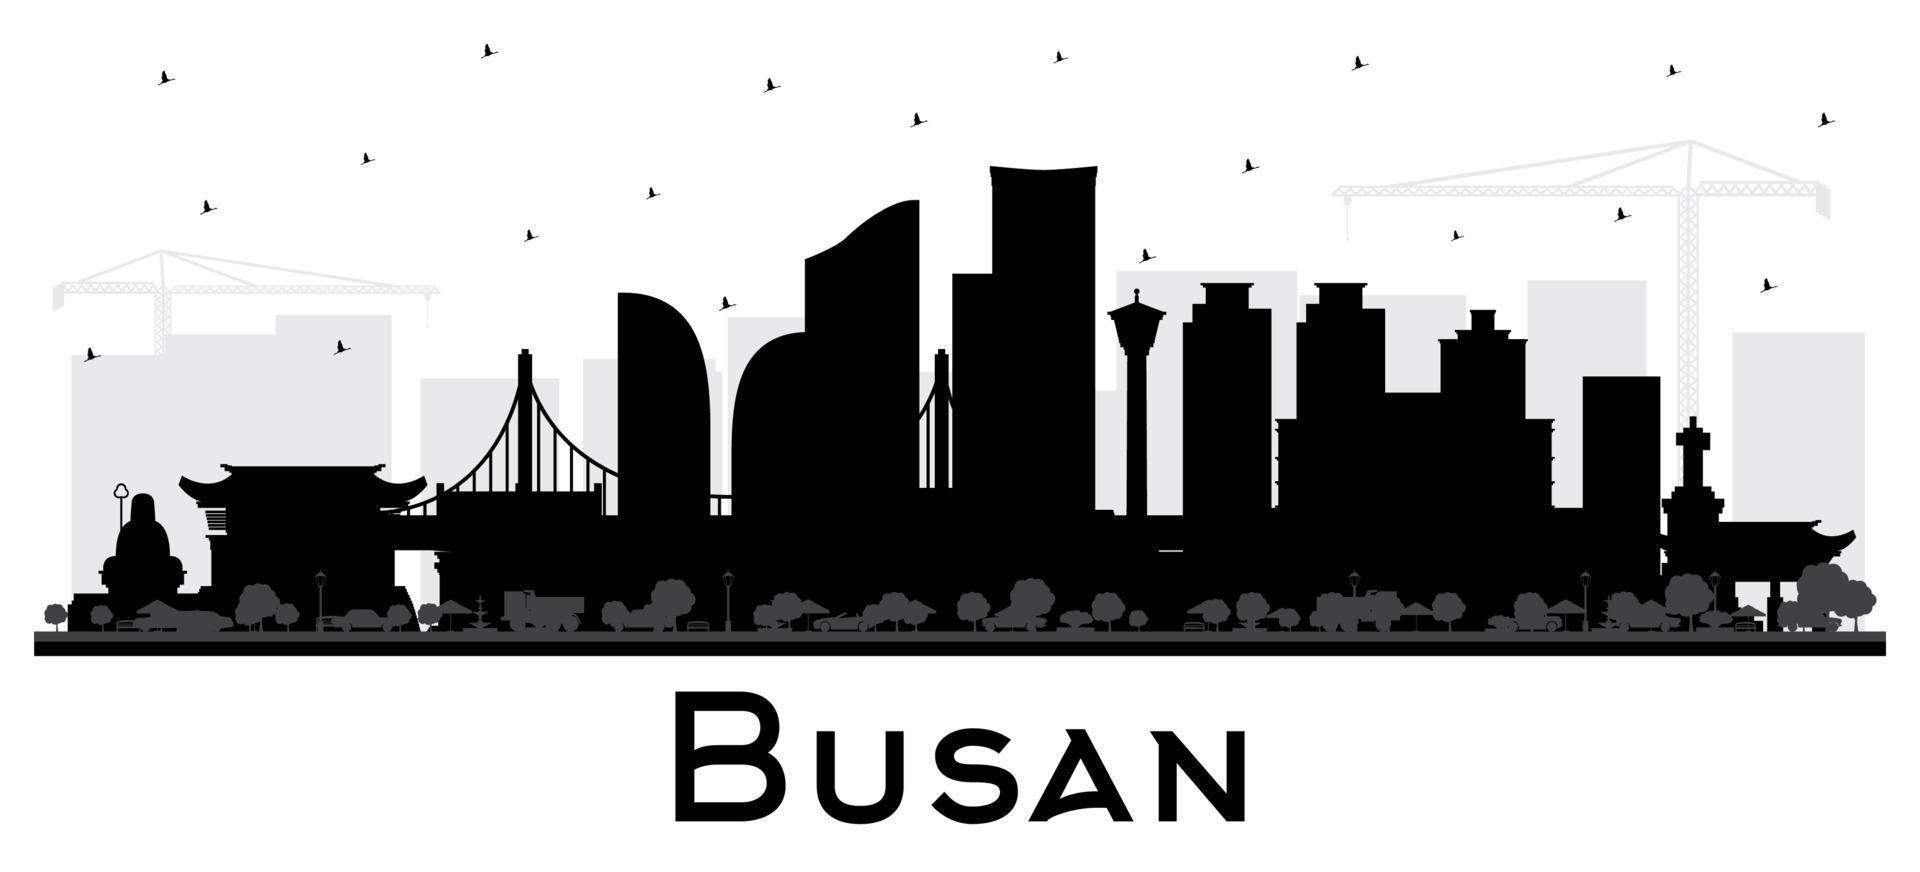 busan südkorea city skyline silhouette mit schwarzen gebäuden isoliert auf weiß. vektor